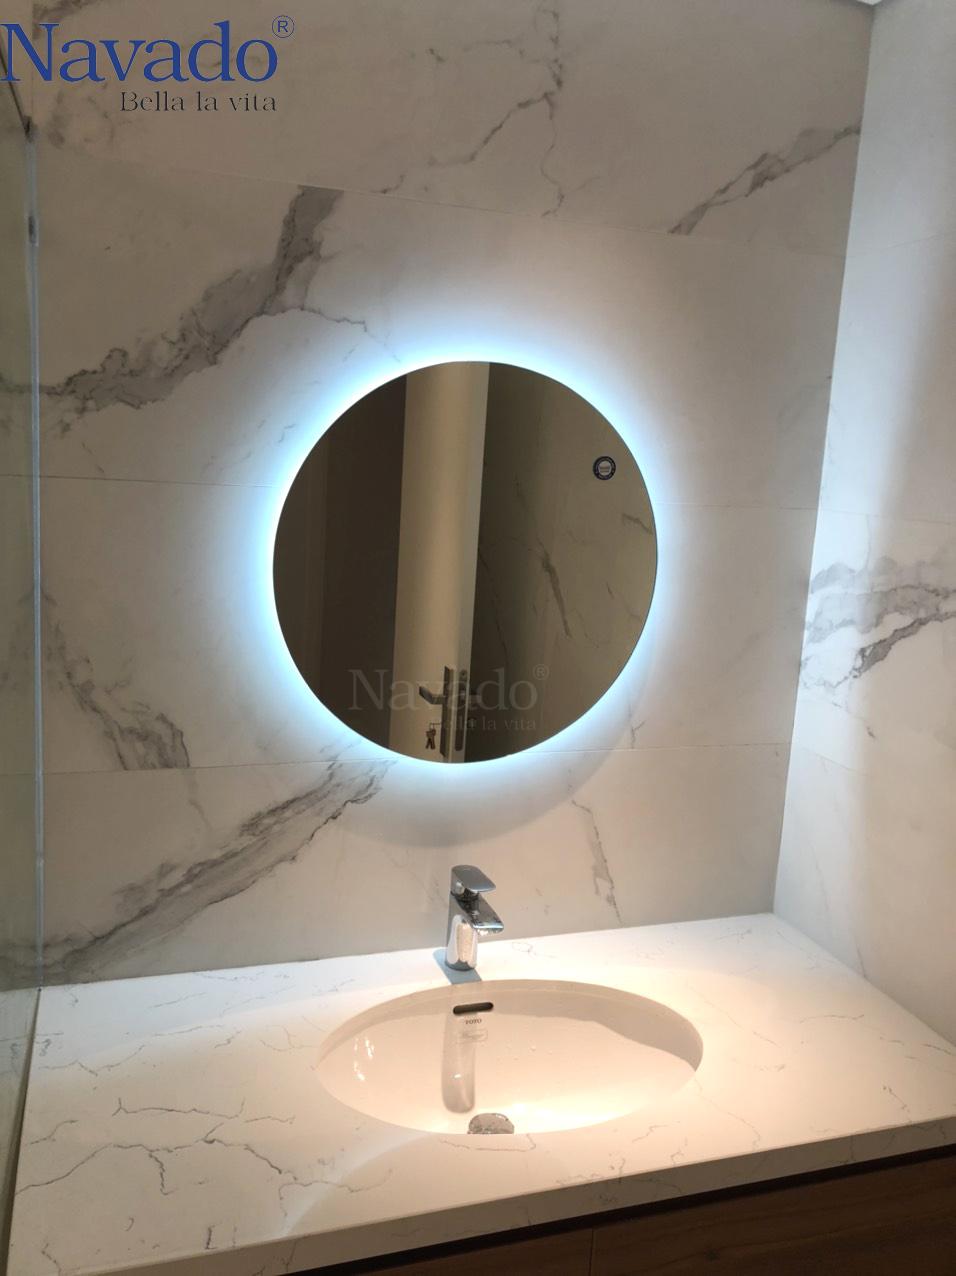 Phòng tắm của bạn quá hẹp hòi và bạn muốn tìm kiếm một gương phòng tắm đèn LED có kích thước phù hợp? Gương đèn LED 80cm phòng tắm sẽ làm bạn thích thú! Với kích thước vừa phải, sản phẩm này vẫn mang lại cho bạn ánh sáng đầy đủ và chất lượng gương tuyệt vời, giúp phòng tắm của bạn trông lớn hơn và thoải mái hơn.